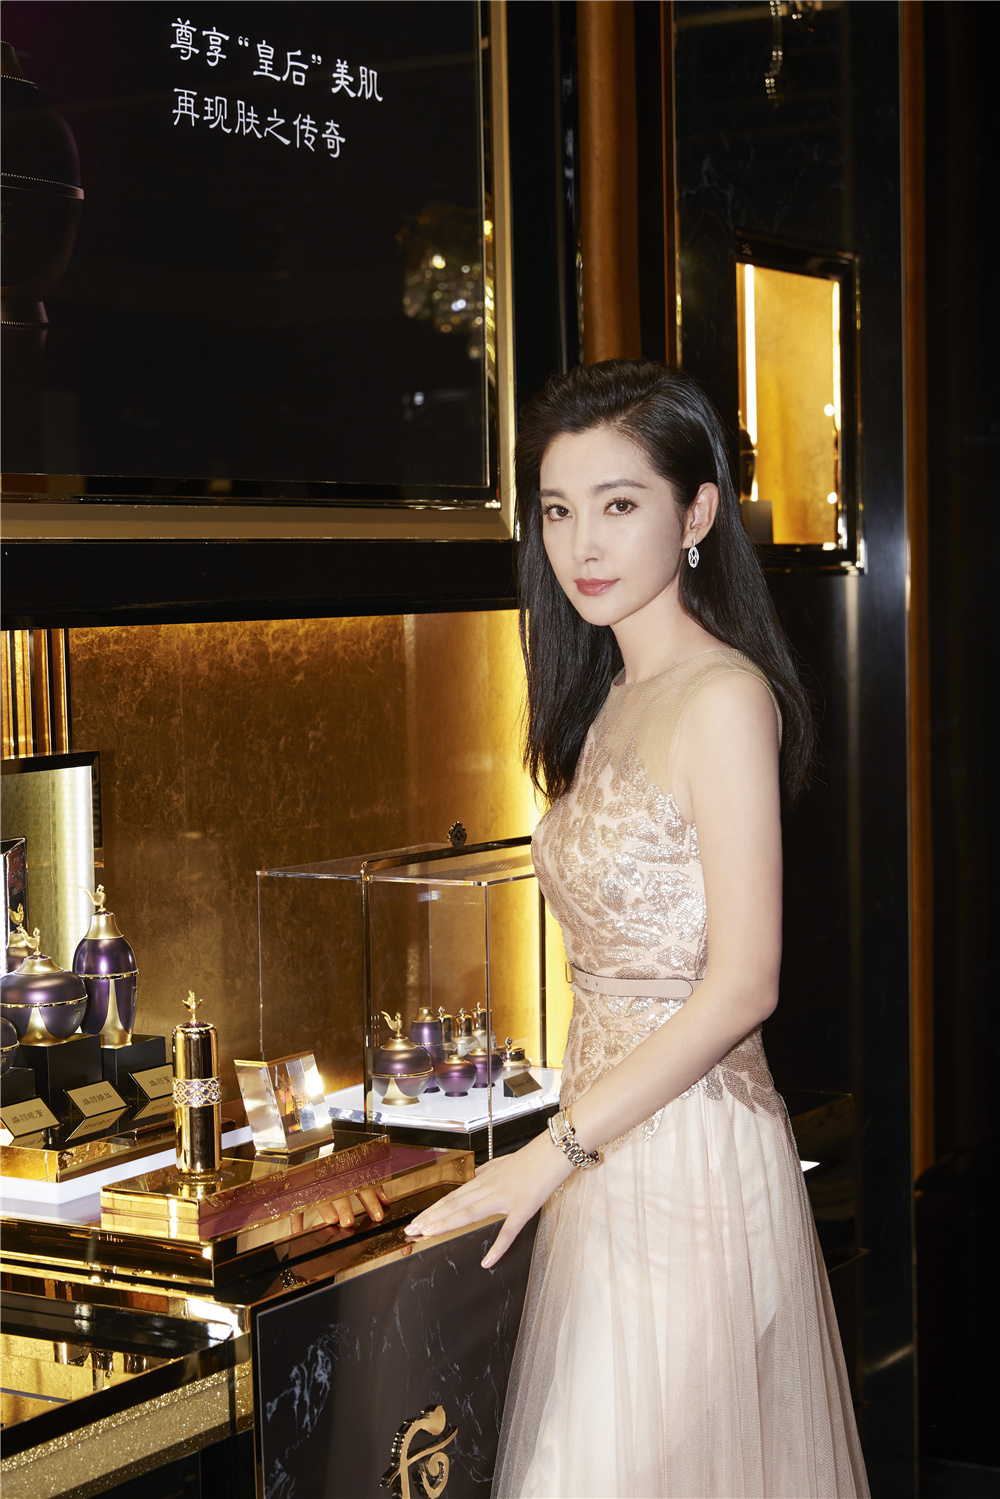 李冰冰出席国际护肤品牌活动 仙气薄纱长裙勾勒曼妙曲线